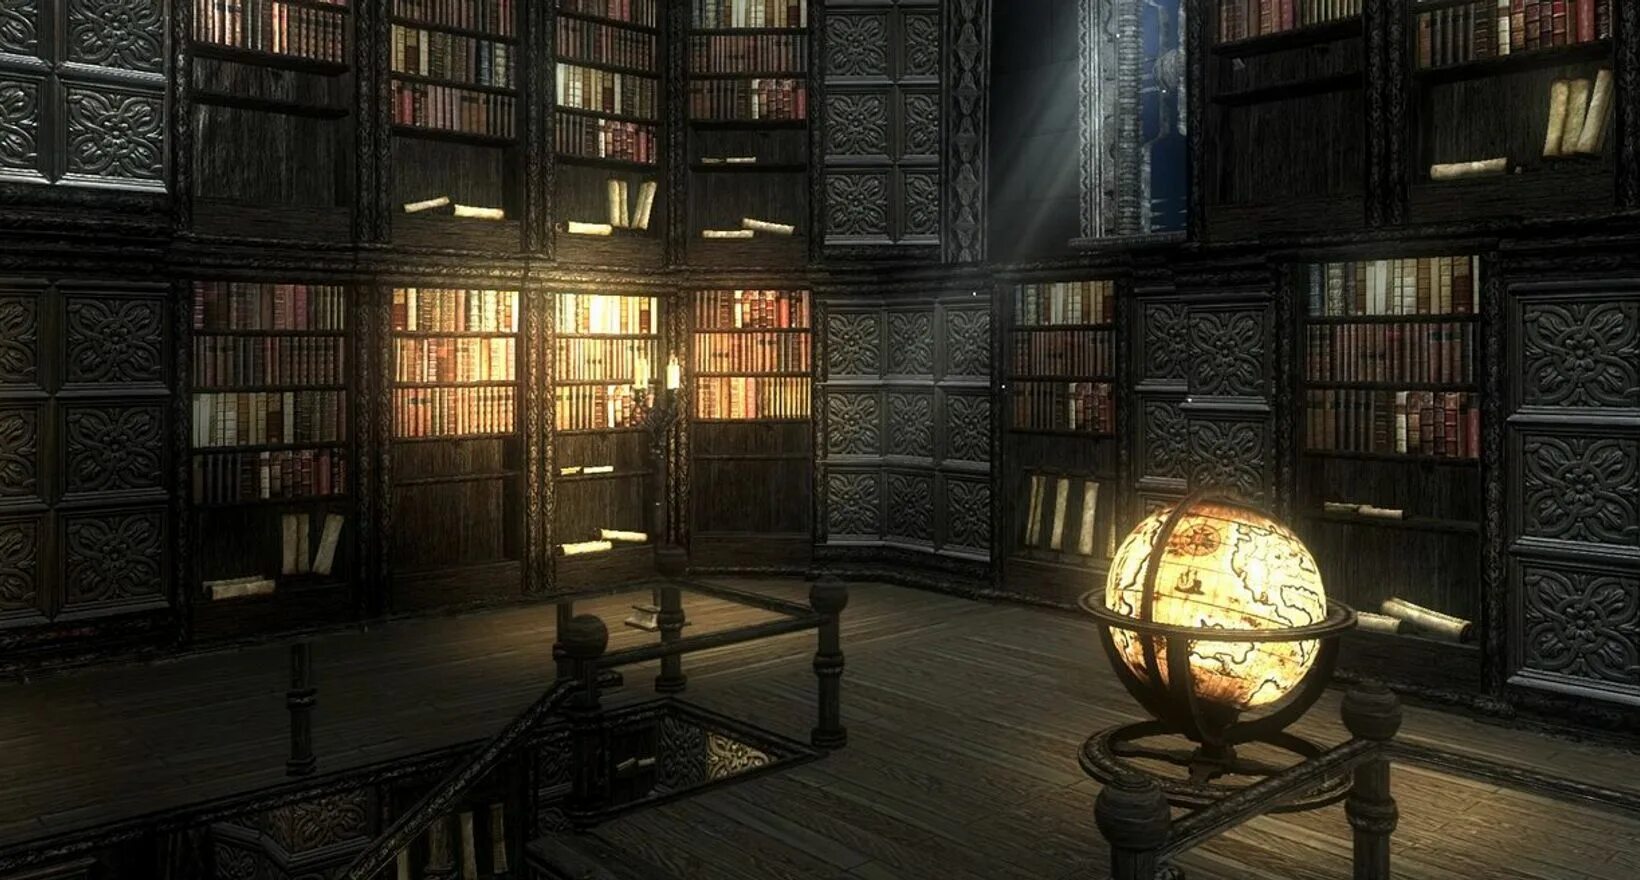 Библиотека без людей. Старинная библиотека. Старинная библиотека в замке. Темная библиотека. Таинственная библиотека.